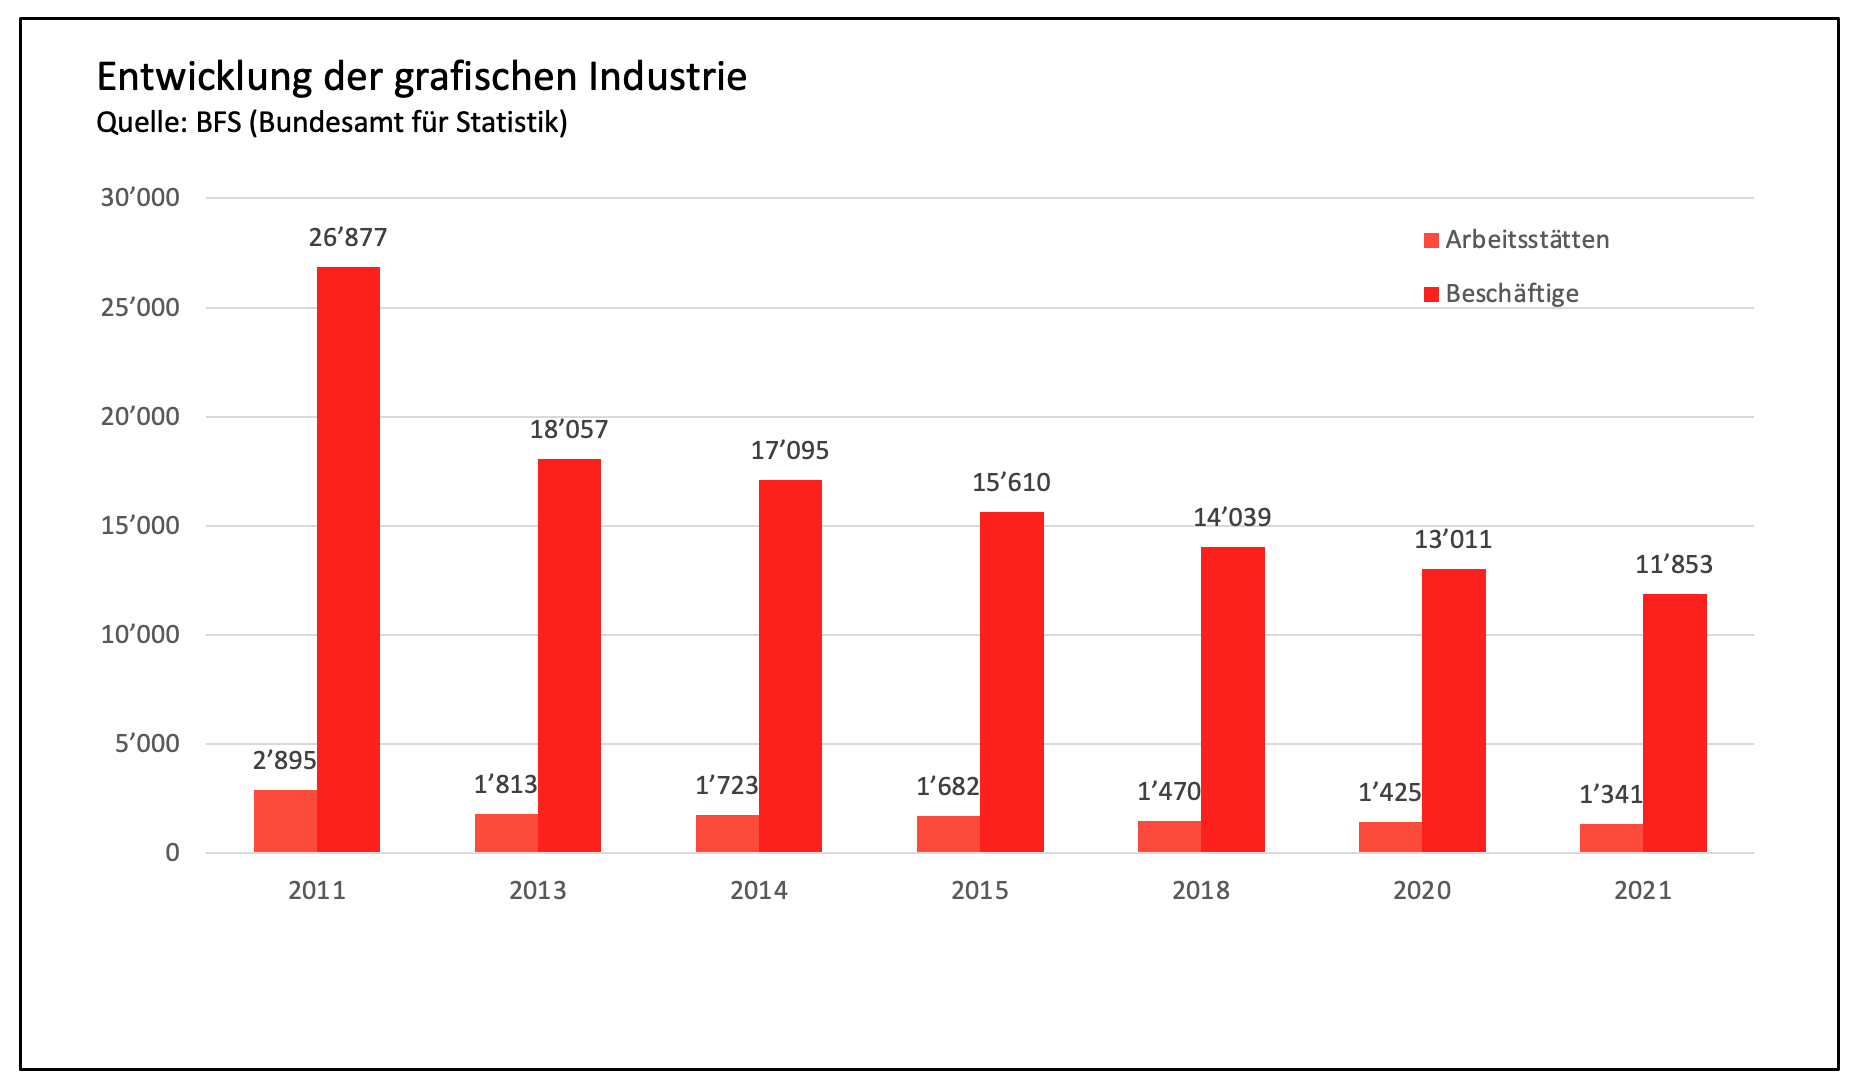 Développement de l'industrie graphique suisse